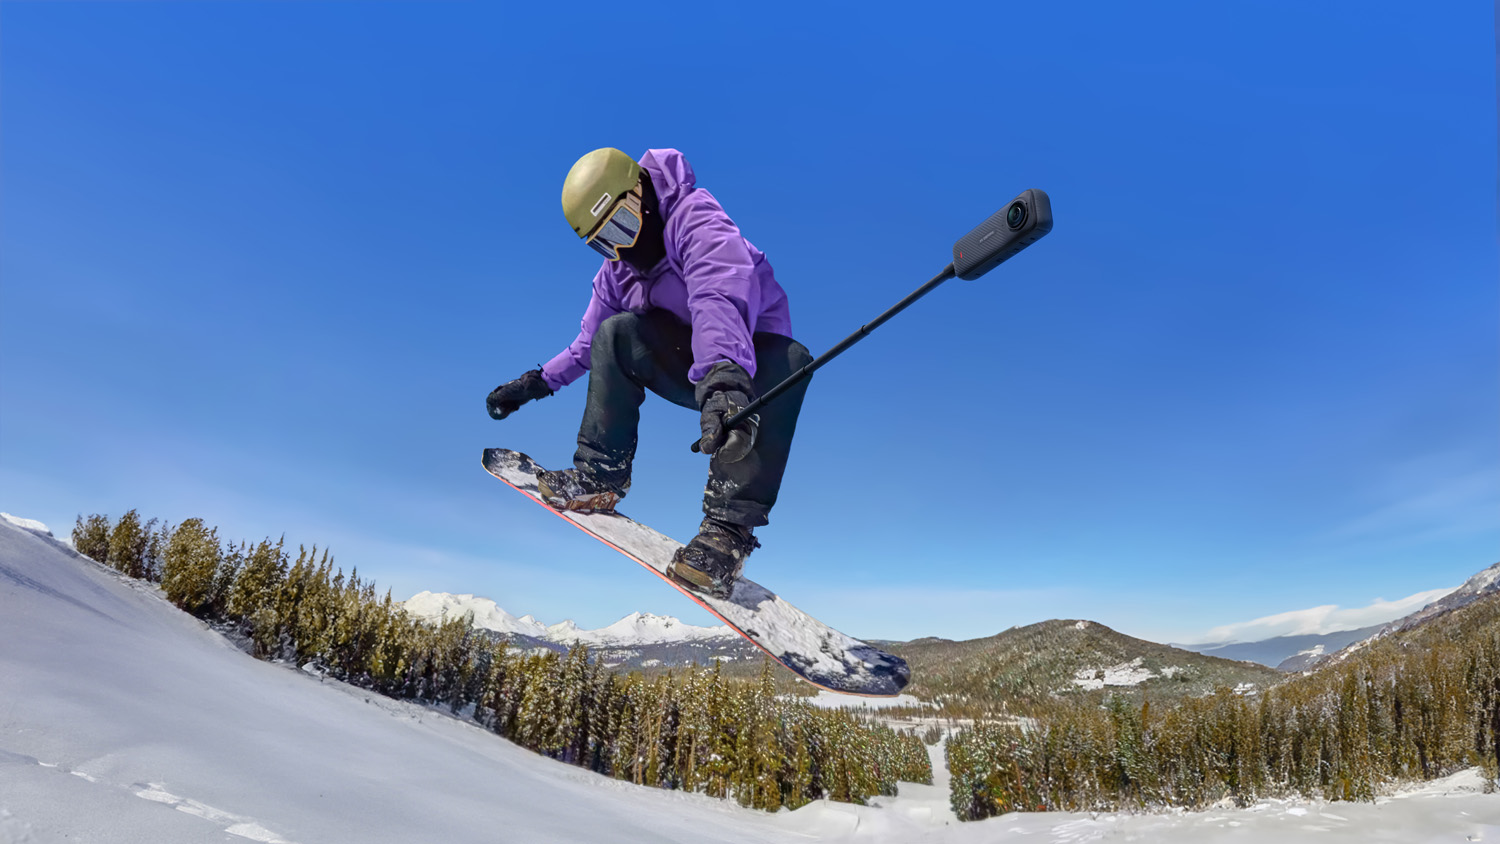 Сноубордист находится в воздухе во время прыжка, в фиолетовой куртке и зимних штанах, в шлеме и очках, с 360-градусной камерой, прикрепленной к концу палки для селфи, на фоне заснеженных гор.